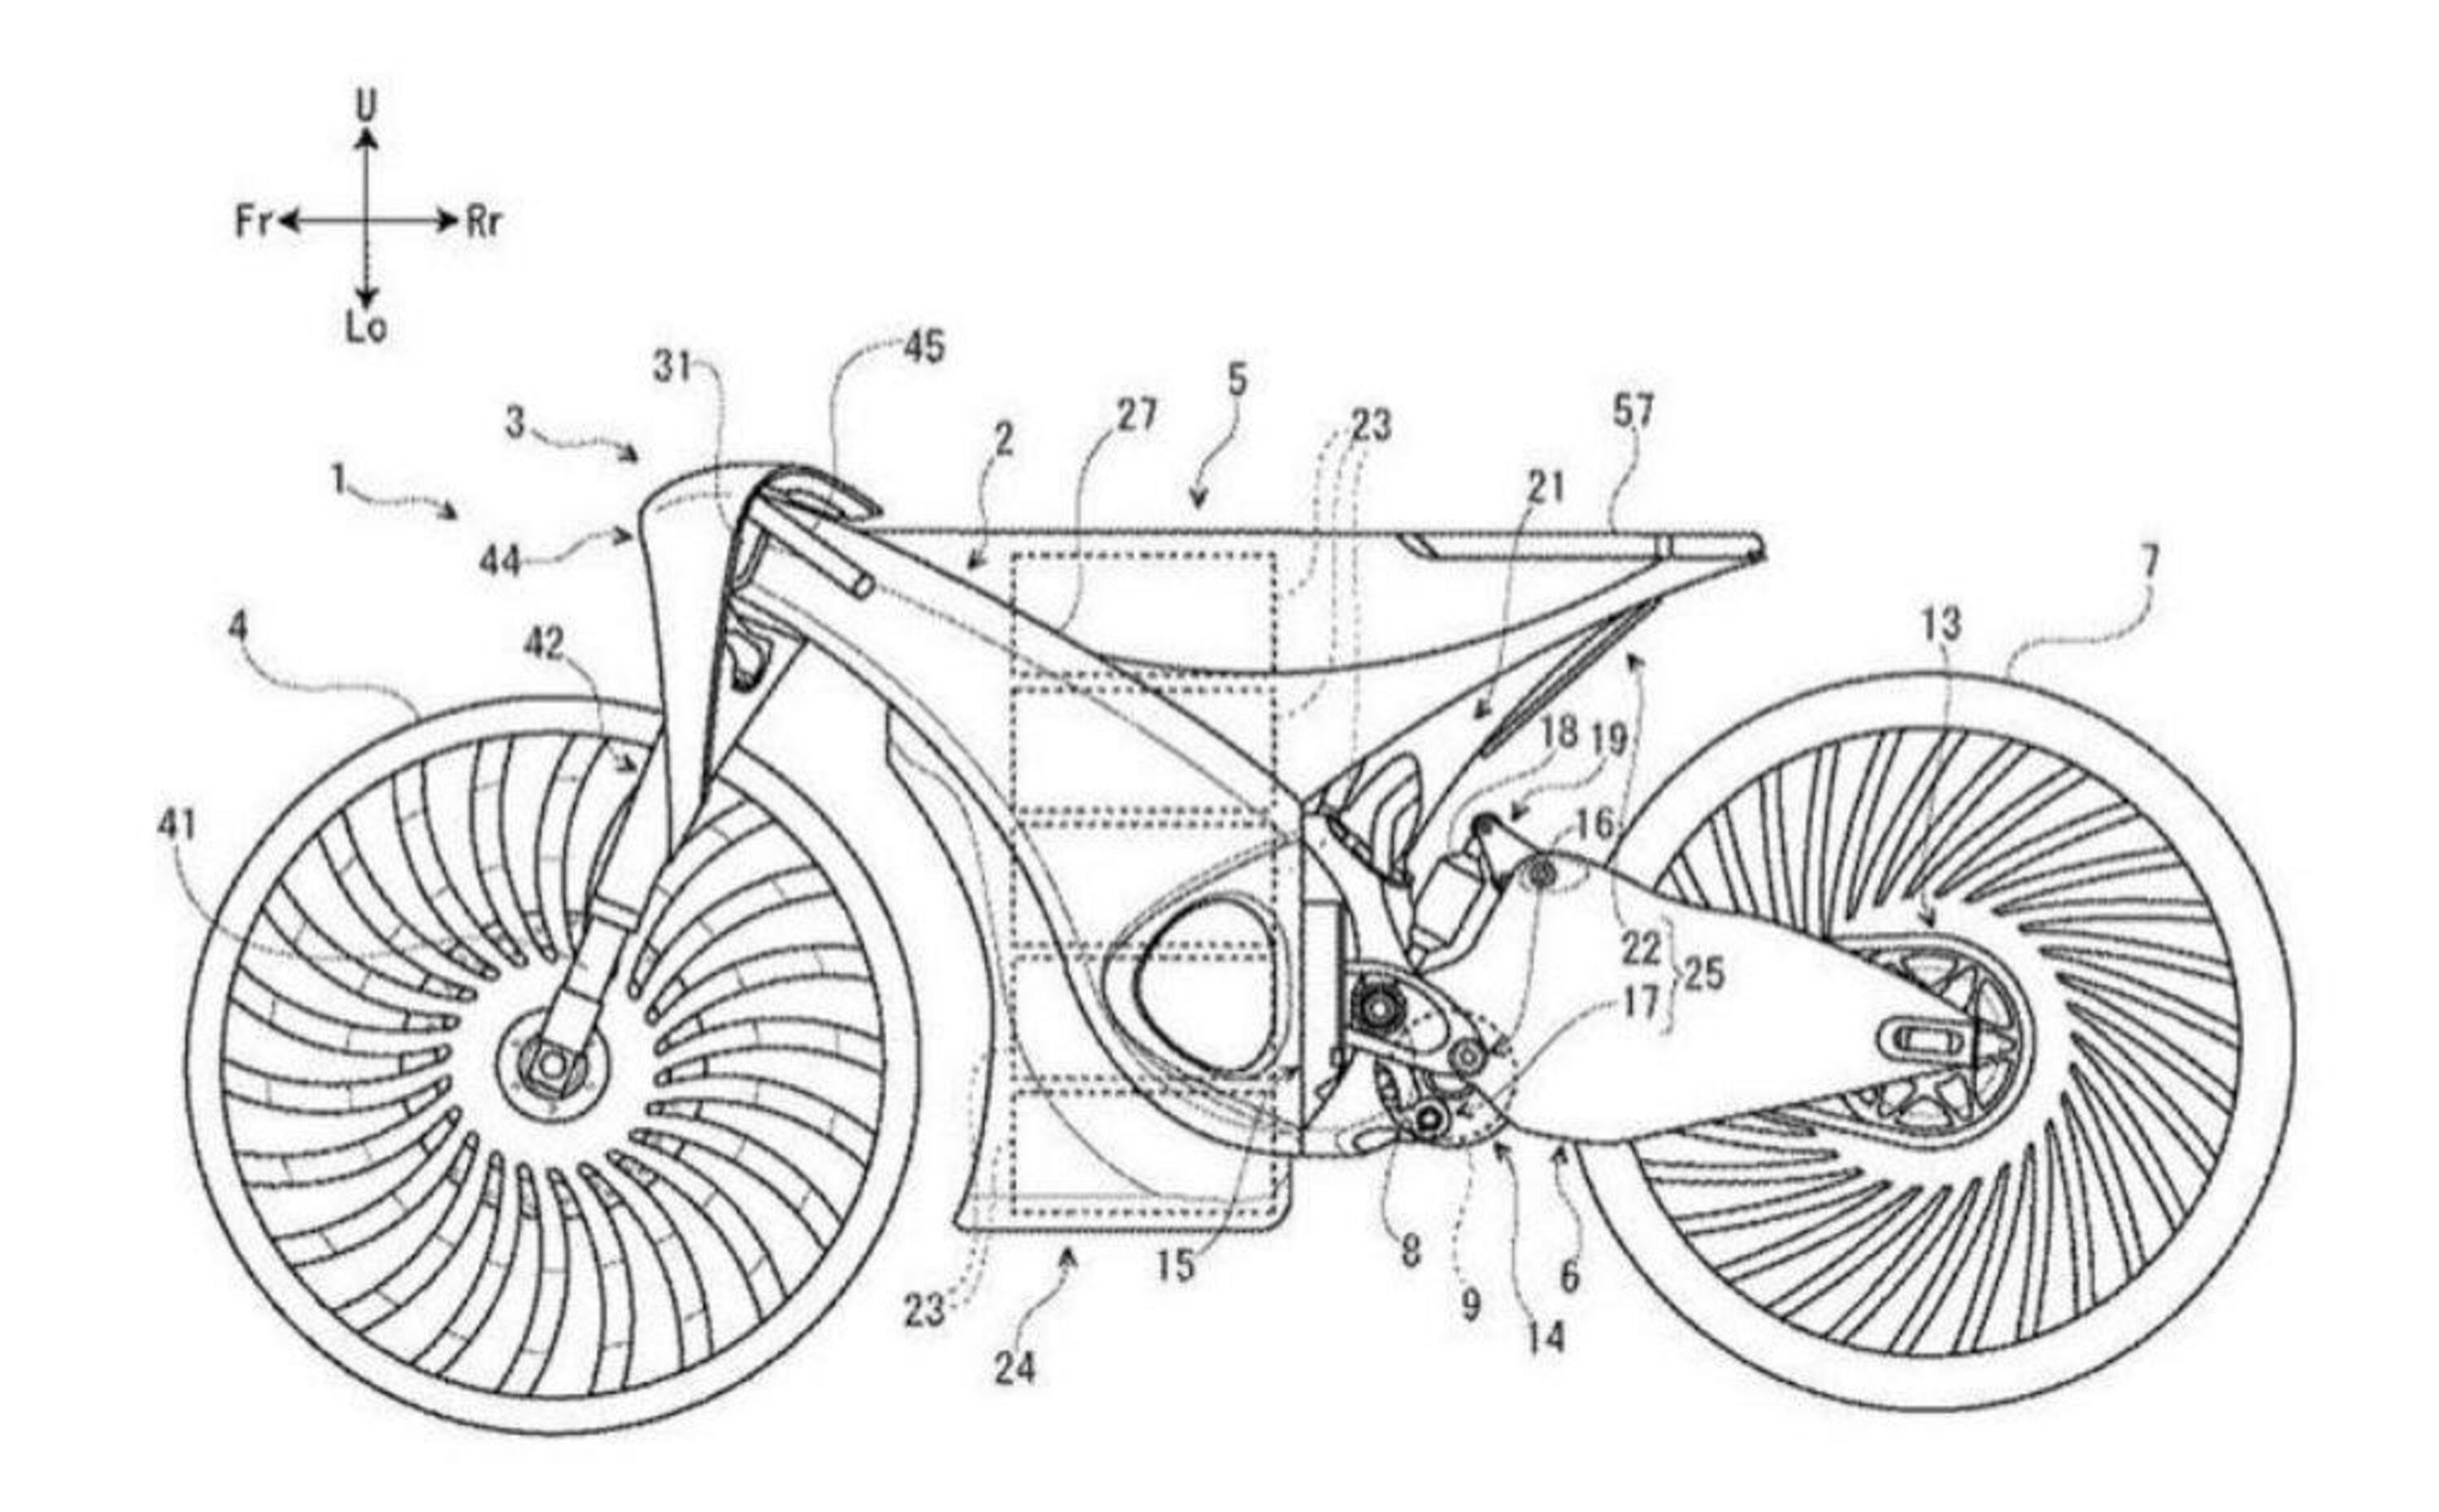 Suzuki brevetta una moto ibrida modulare